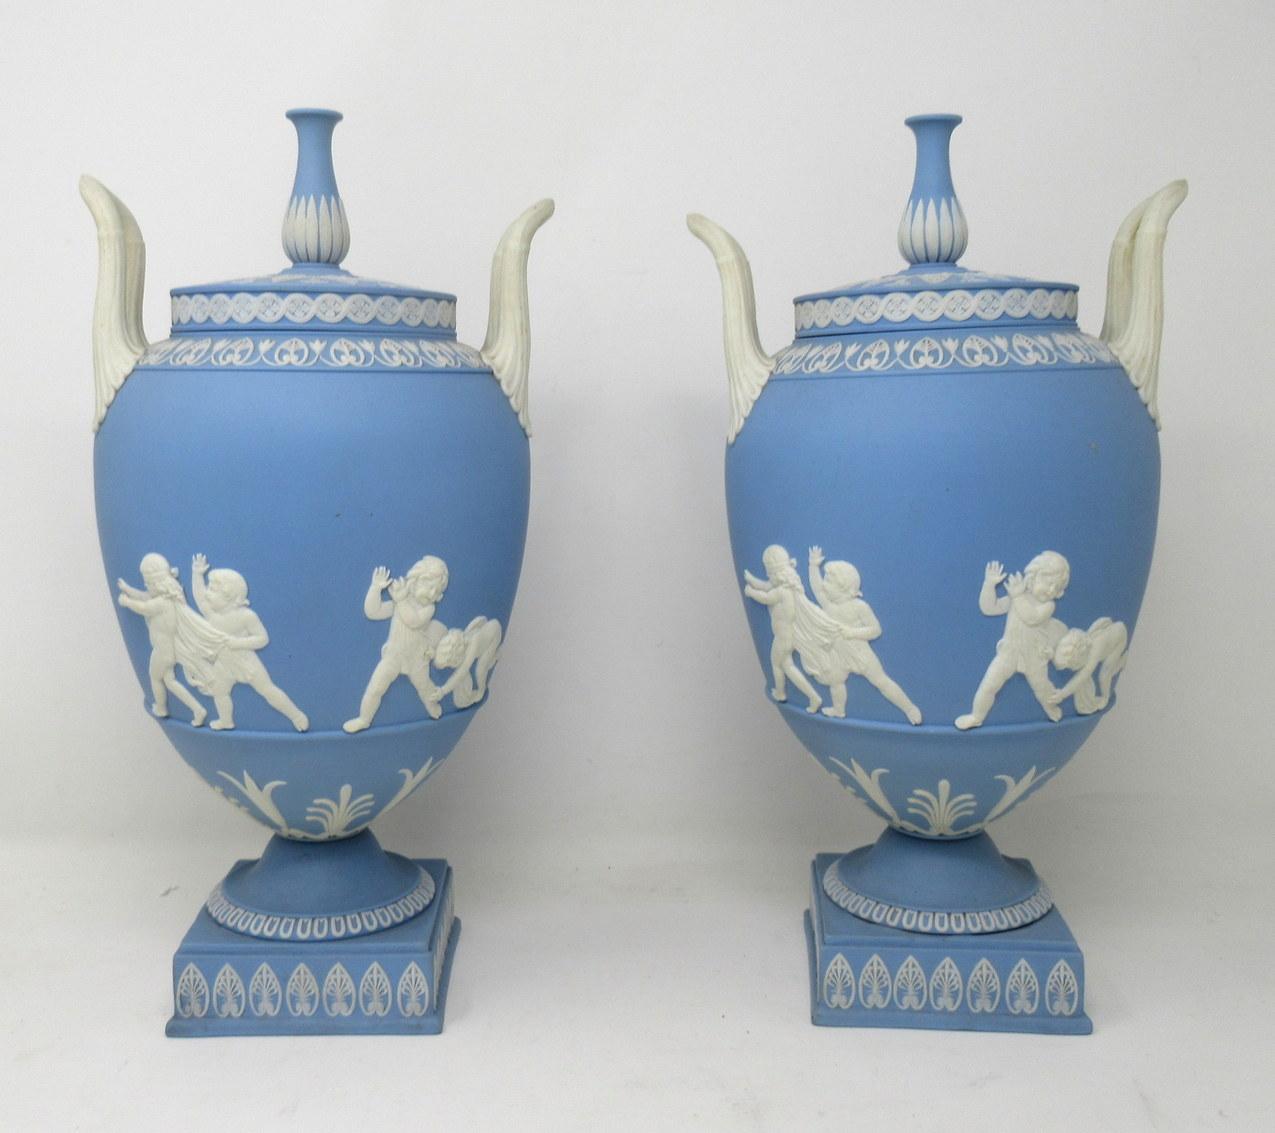 Une paire exquise et assez rare de vases en jaspe à fond bleu de Staffordshire Wedgwood:: de forme amphore et de proportions généreuses:: fermement attribués à John Flaxman Junior. Vers le premier quart du XIXe siècle:: peut-être un peu plus tôt.